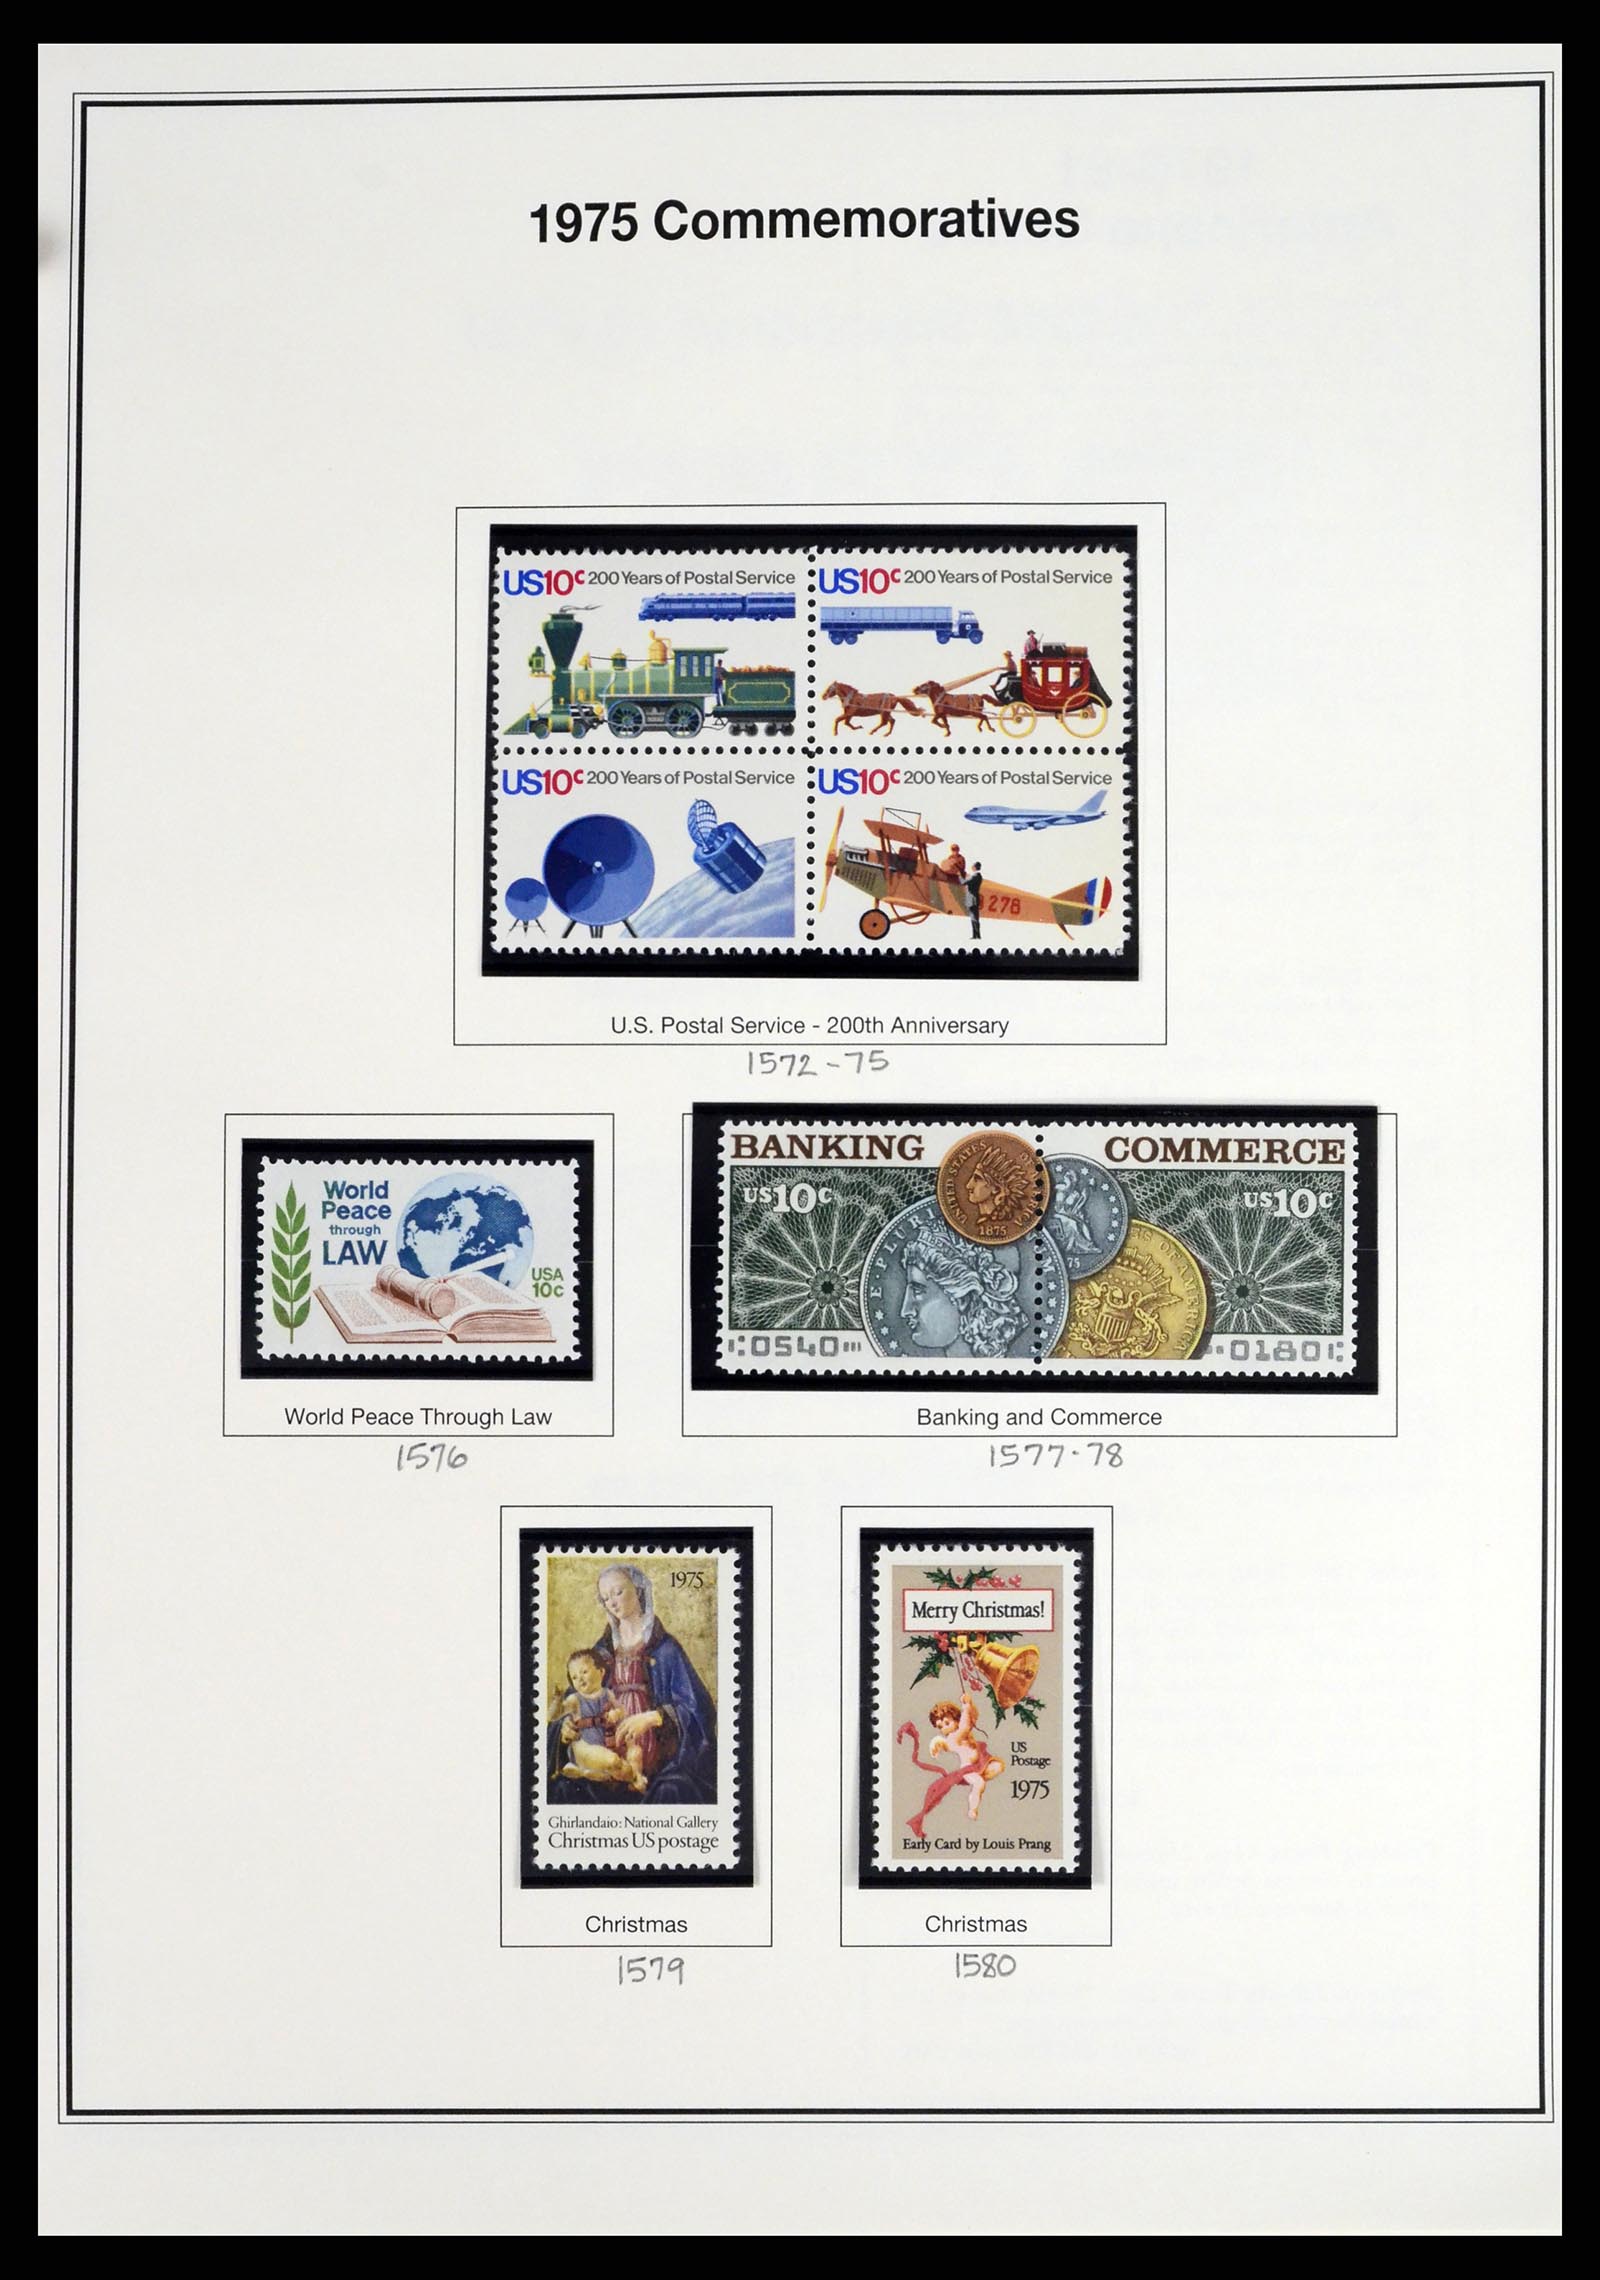 37193 023 - Stamp collection 37193 USA 1970-2020!